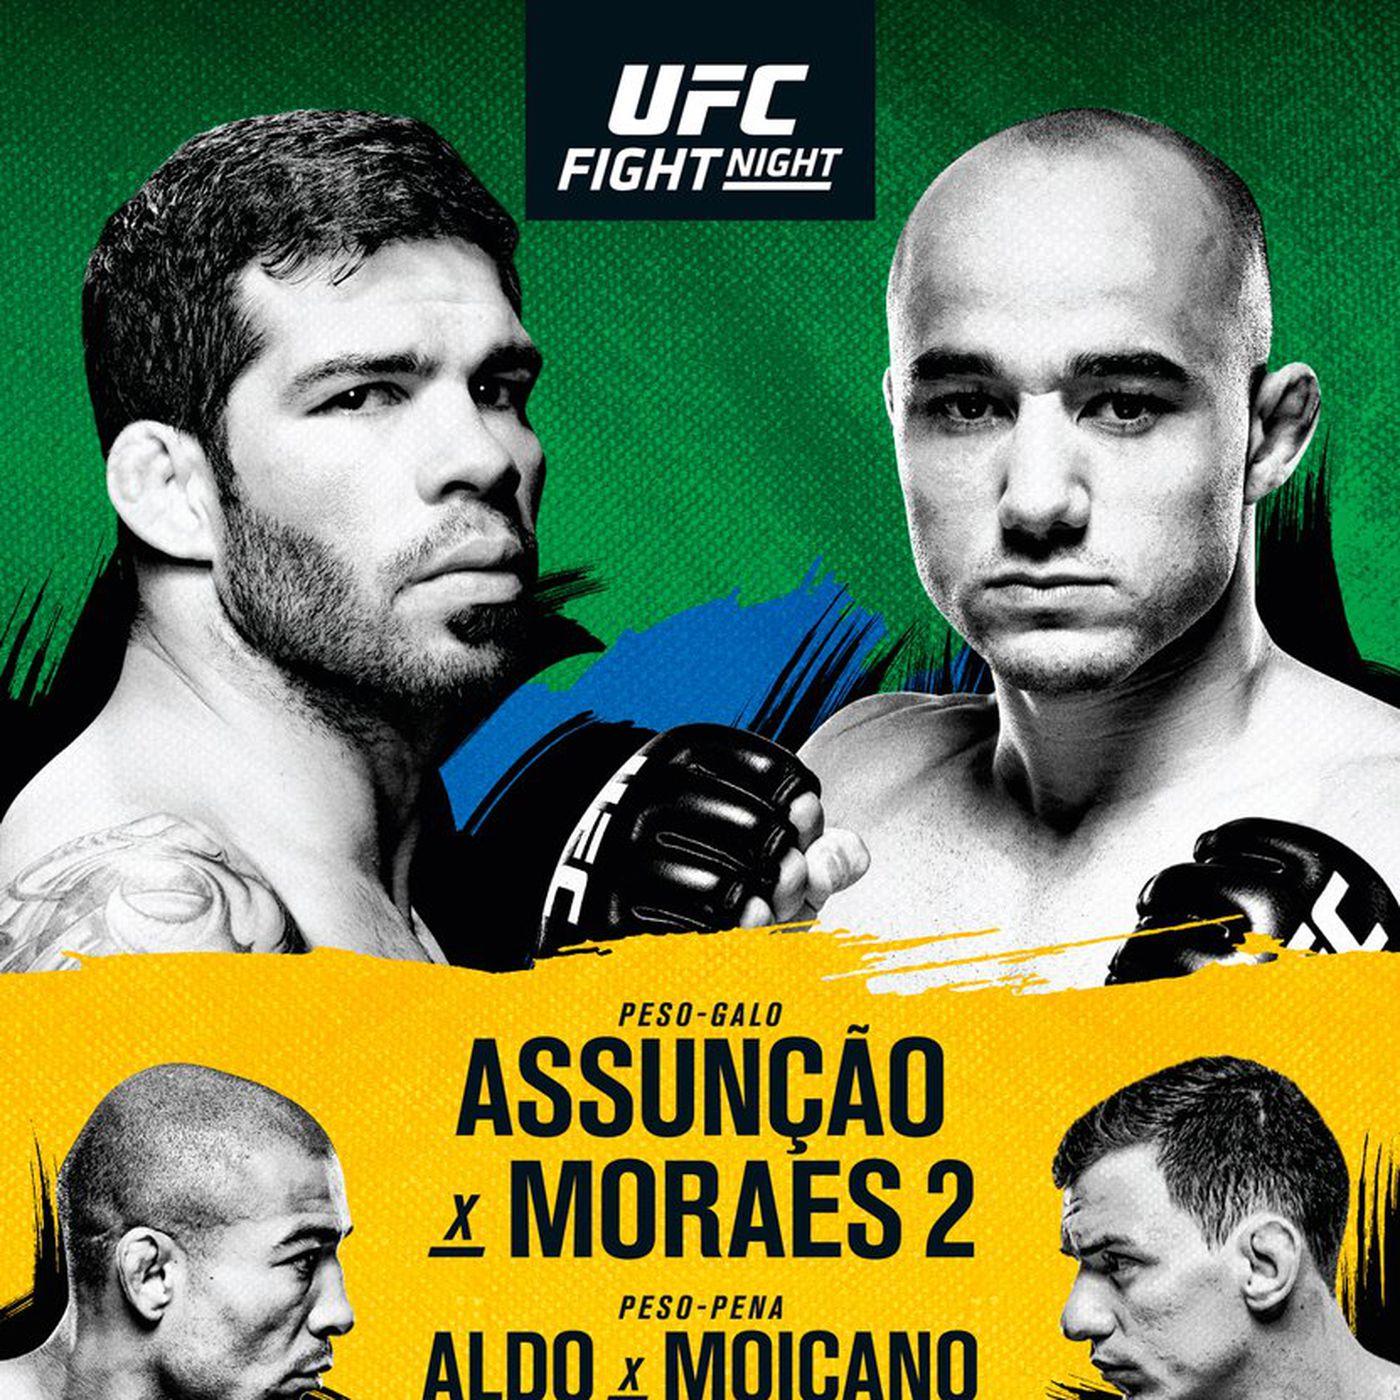 The fight poster for Assunção vs Moraes 2. Photo by UFC.